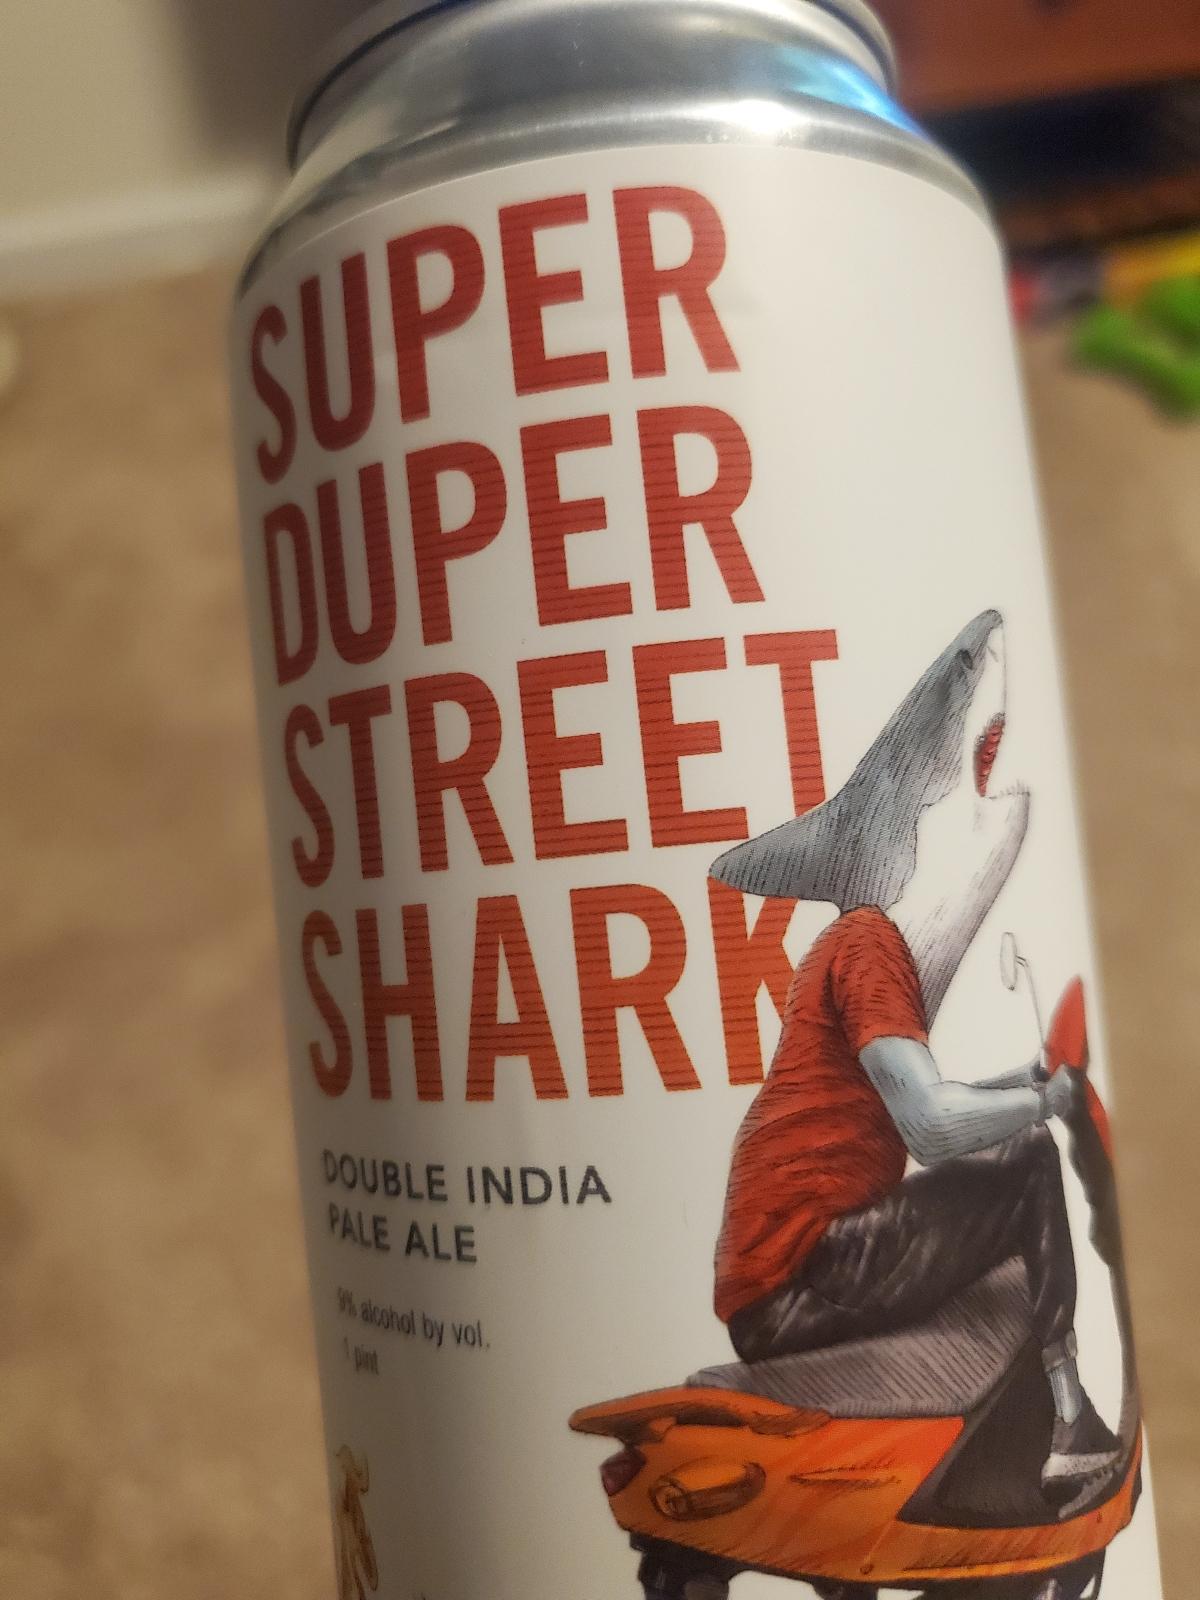 Super Duper Street Shark